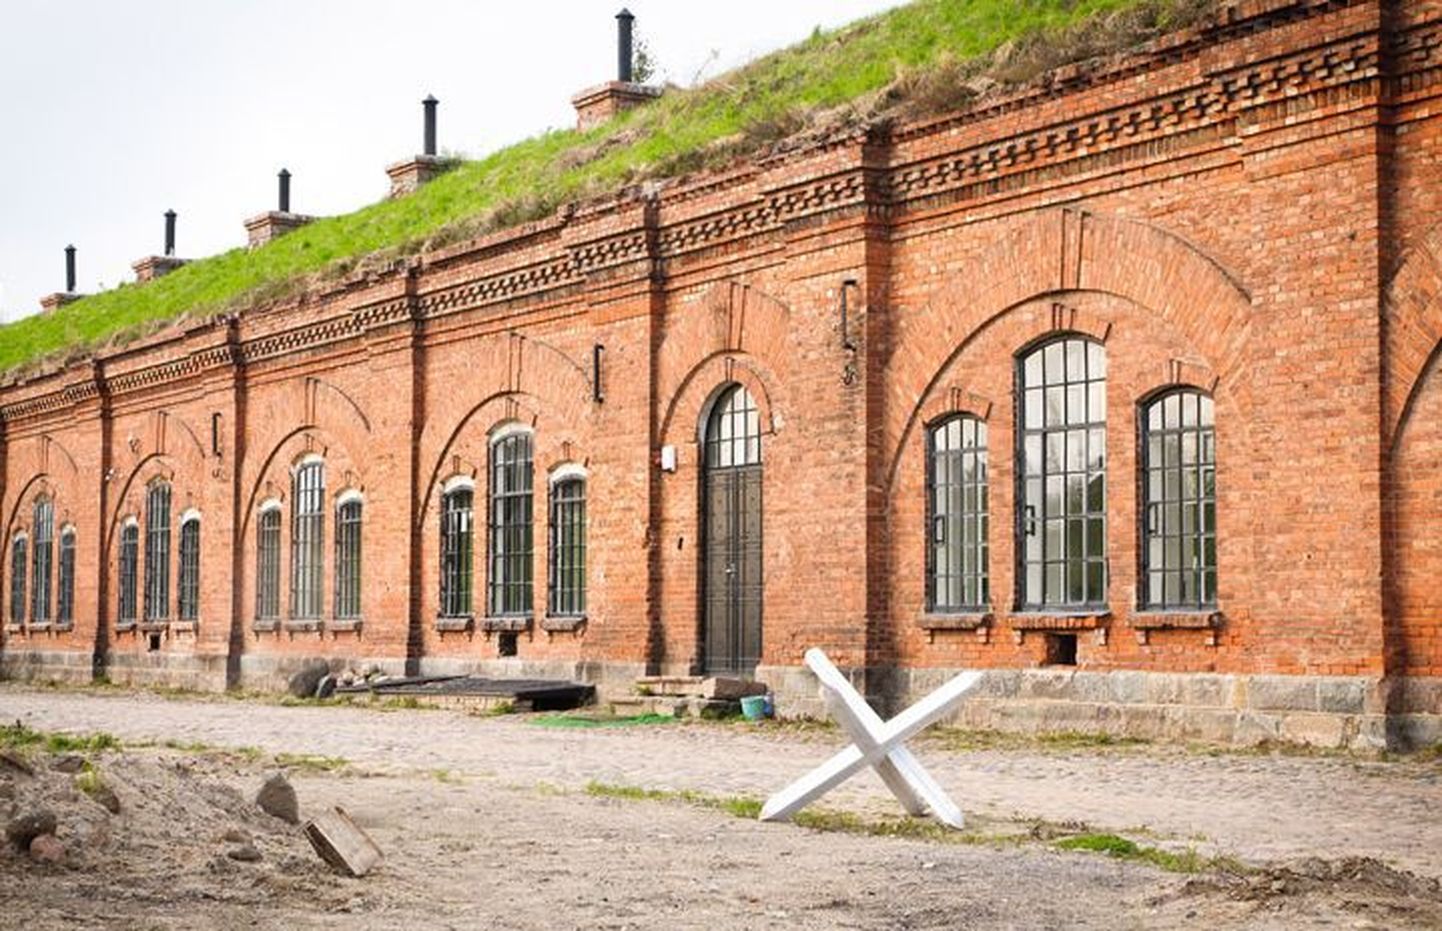 Leedus asuv 19.sajandi kindlus, kus Teise maailmasõja ajal oli koonduslaager